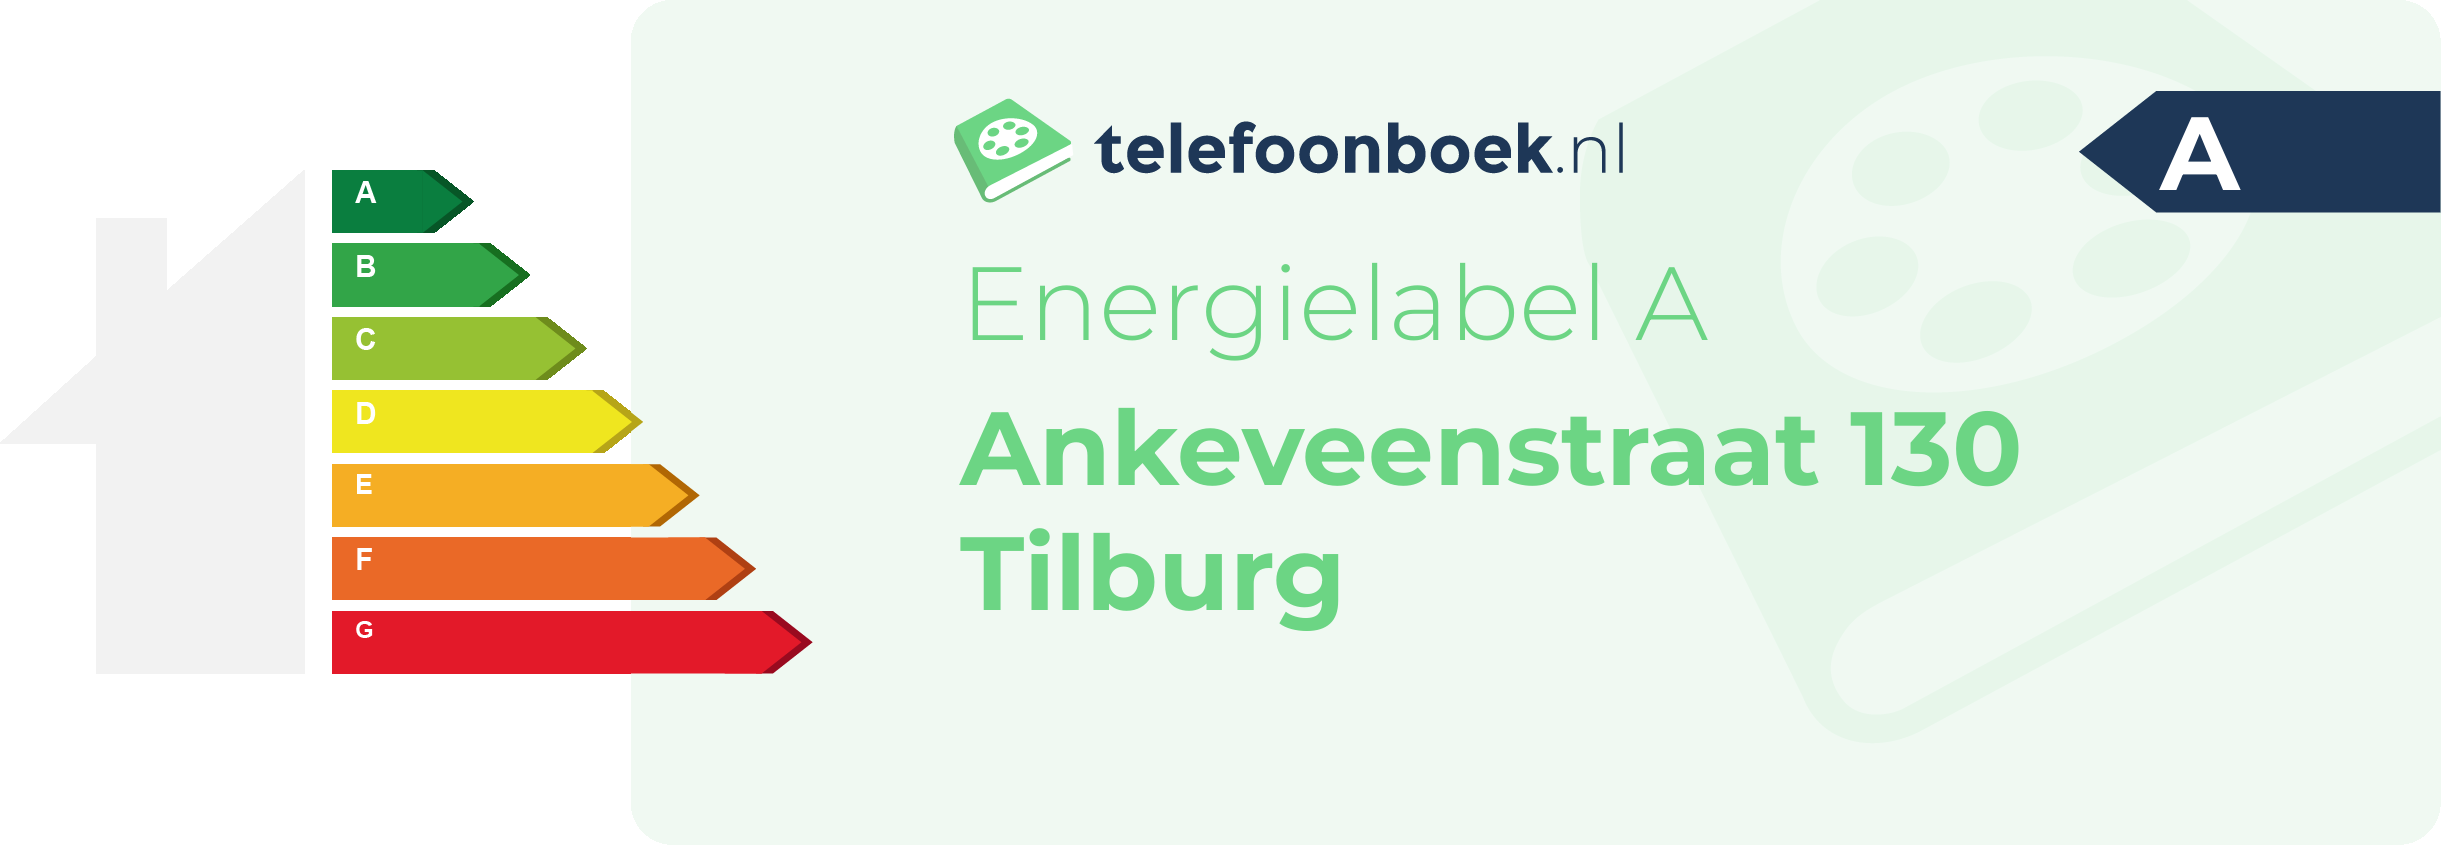 Energielabel Ankeveenstraat 130 Tilburg